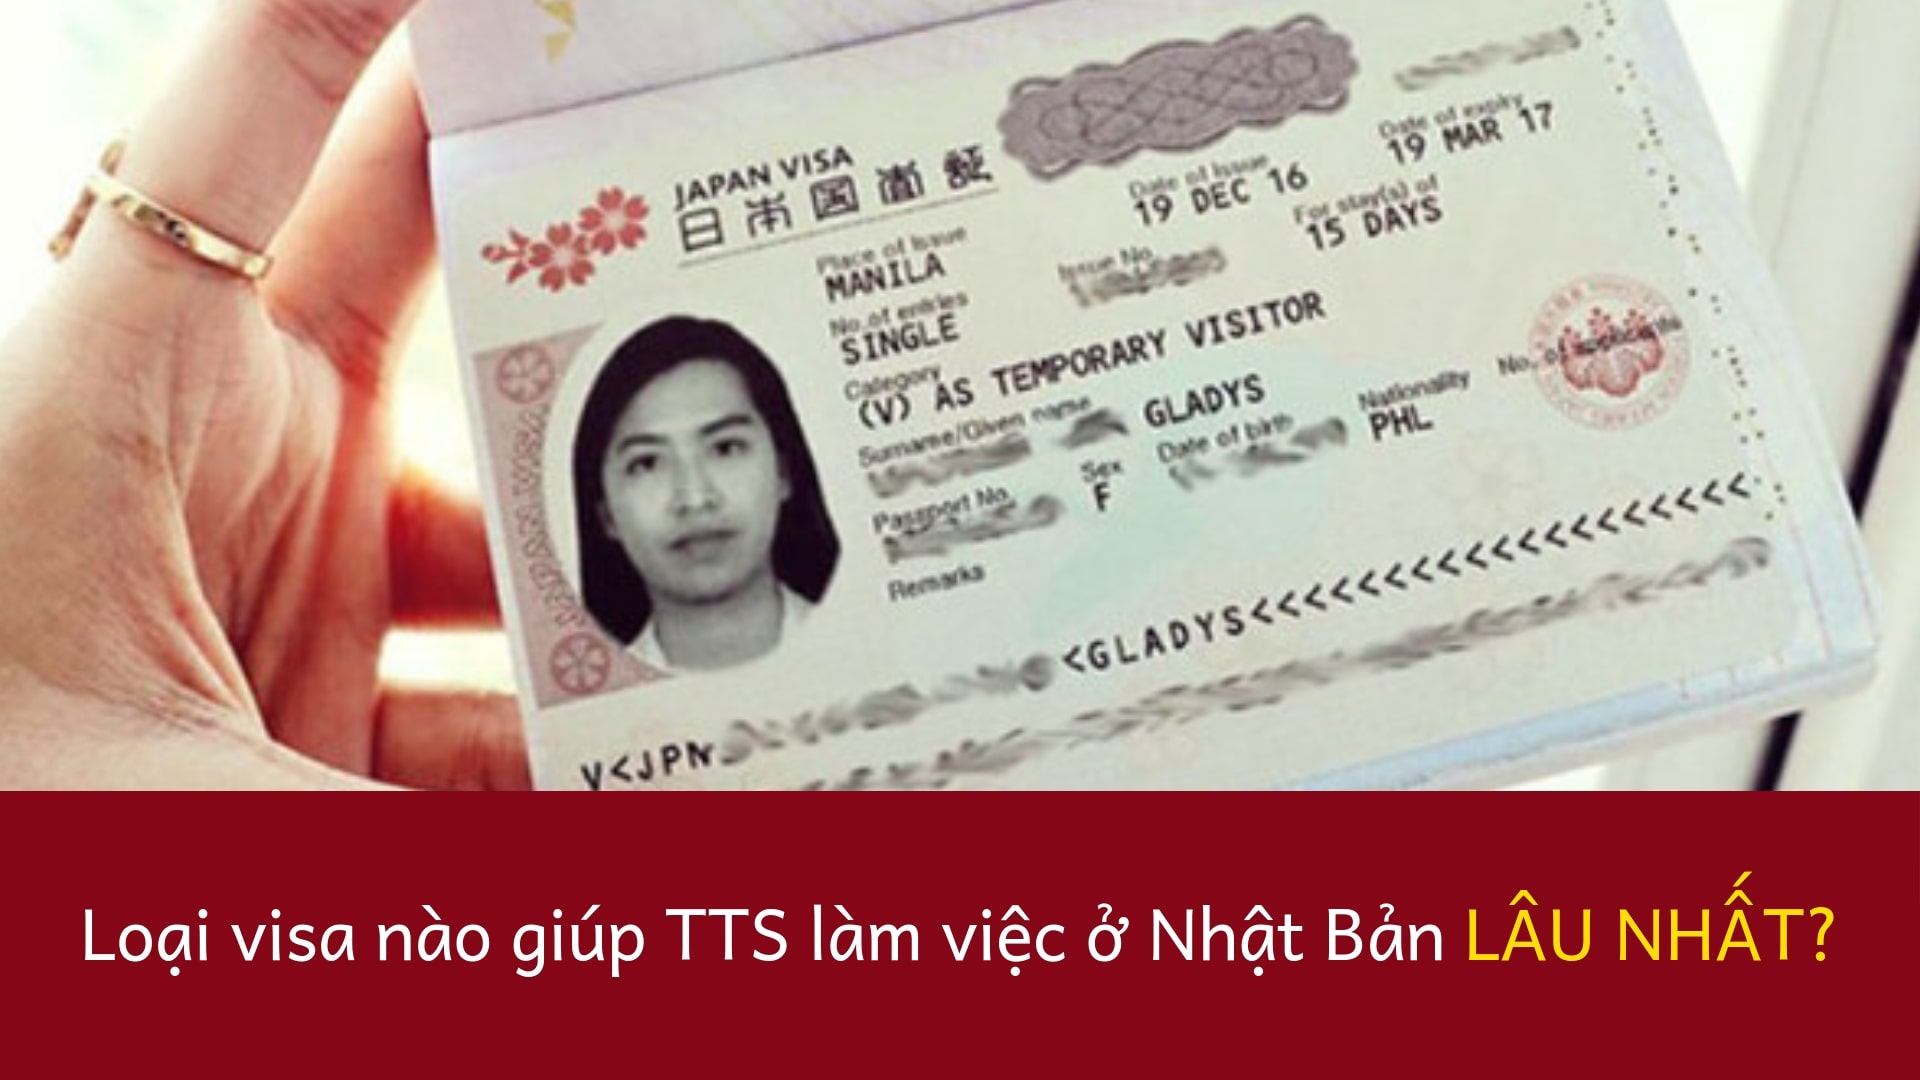 Loại visa nào giúp TTS làm việc ở Nhật Bản lâu nhất?